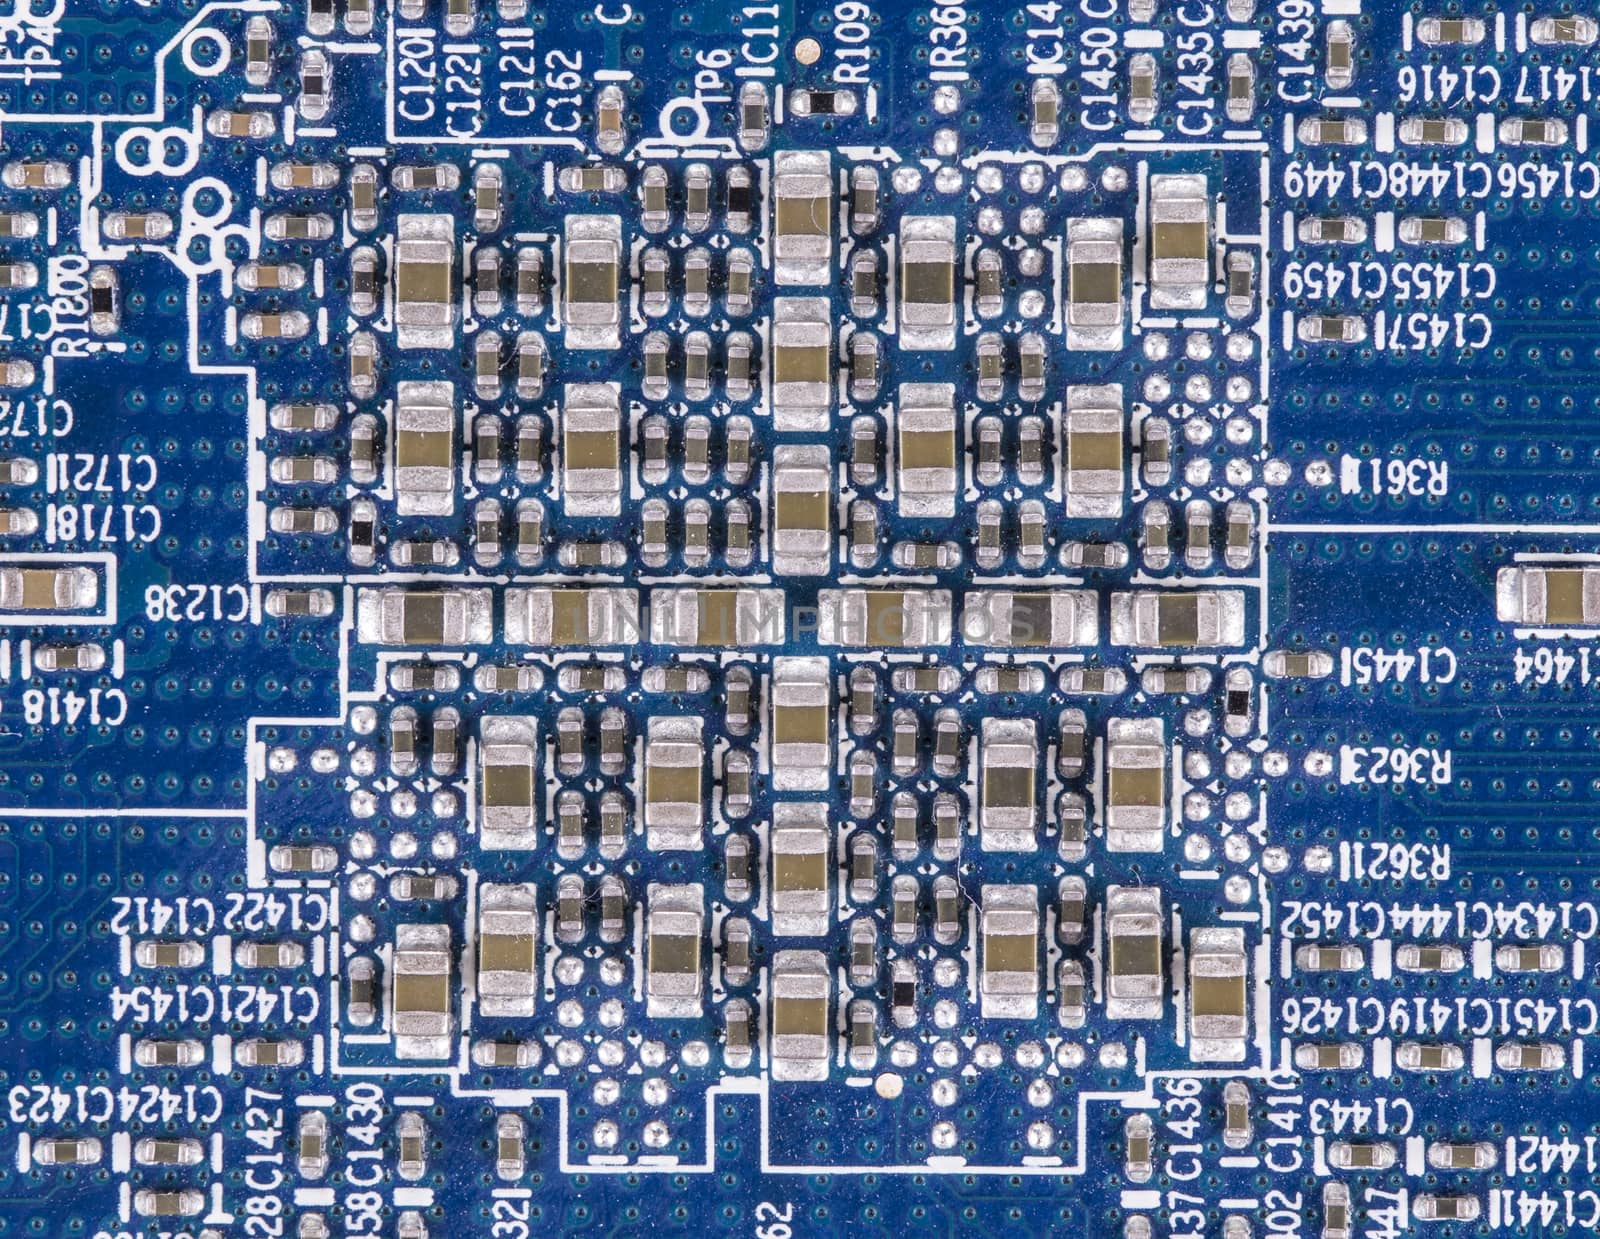 electronic circuit board by ozaiachin